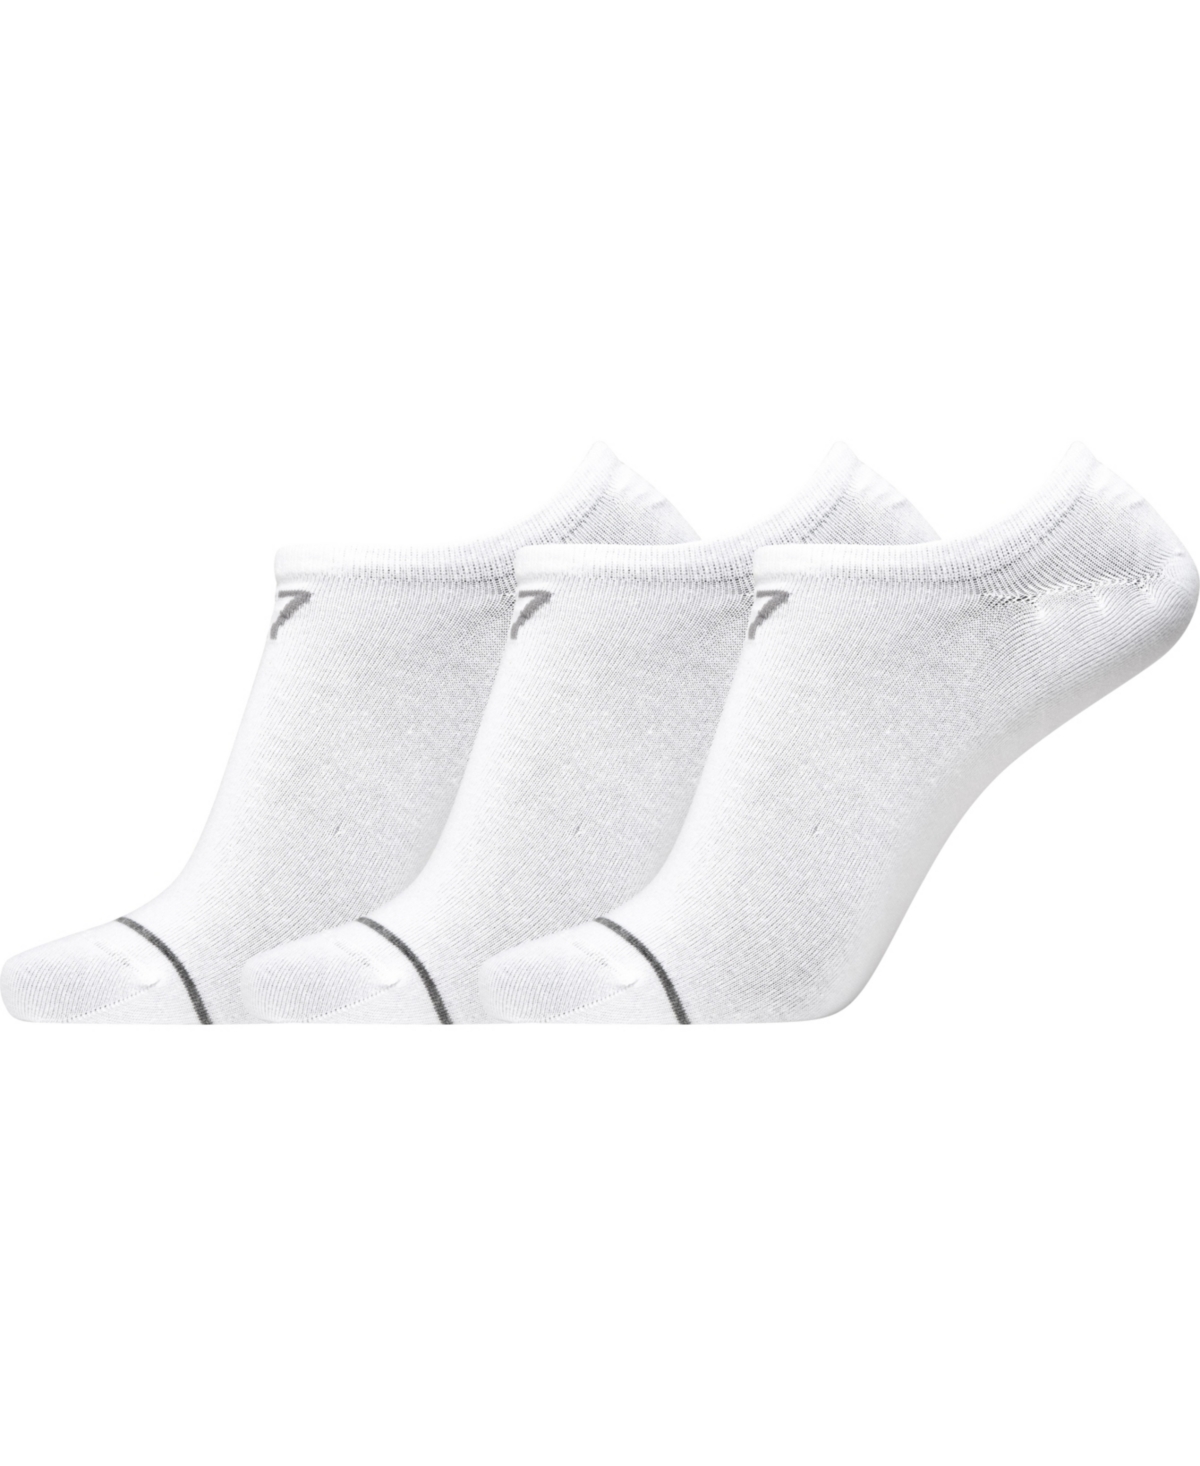 Men's Athletic Footie Socks, Pack of 3 - Black